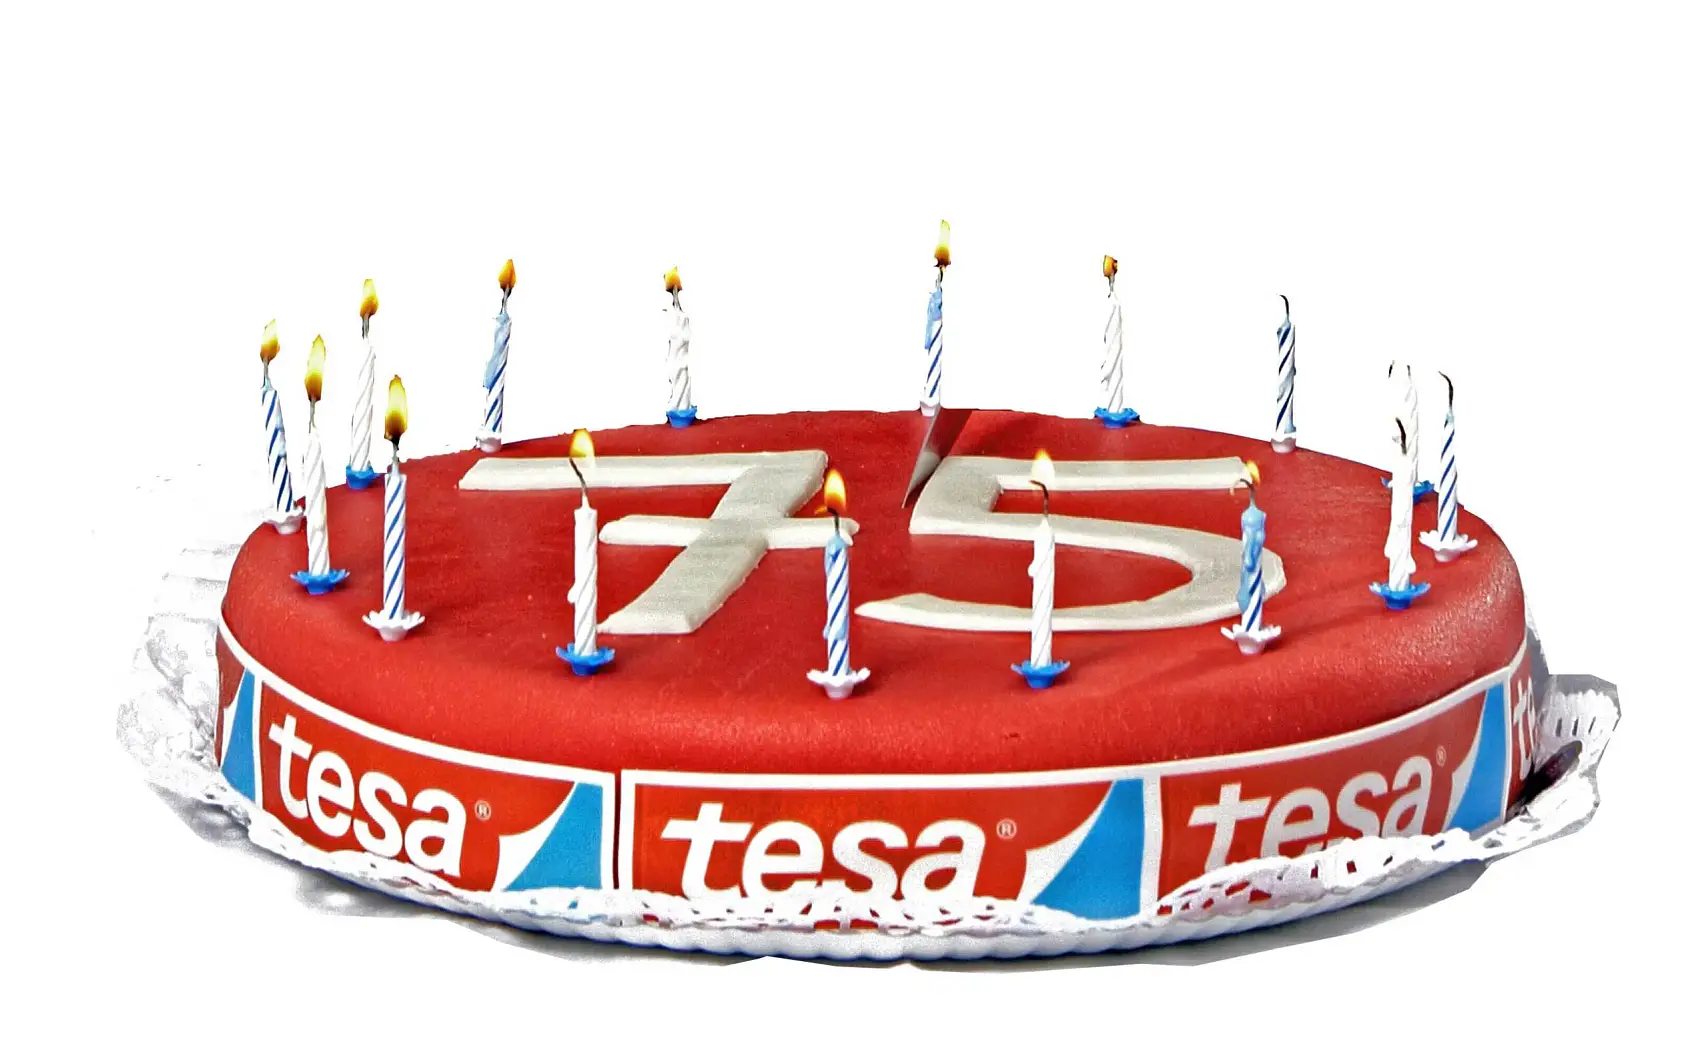 2011년 tesa는 설립 75주년을 맞았습니다.